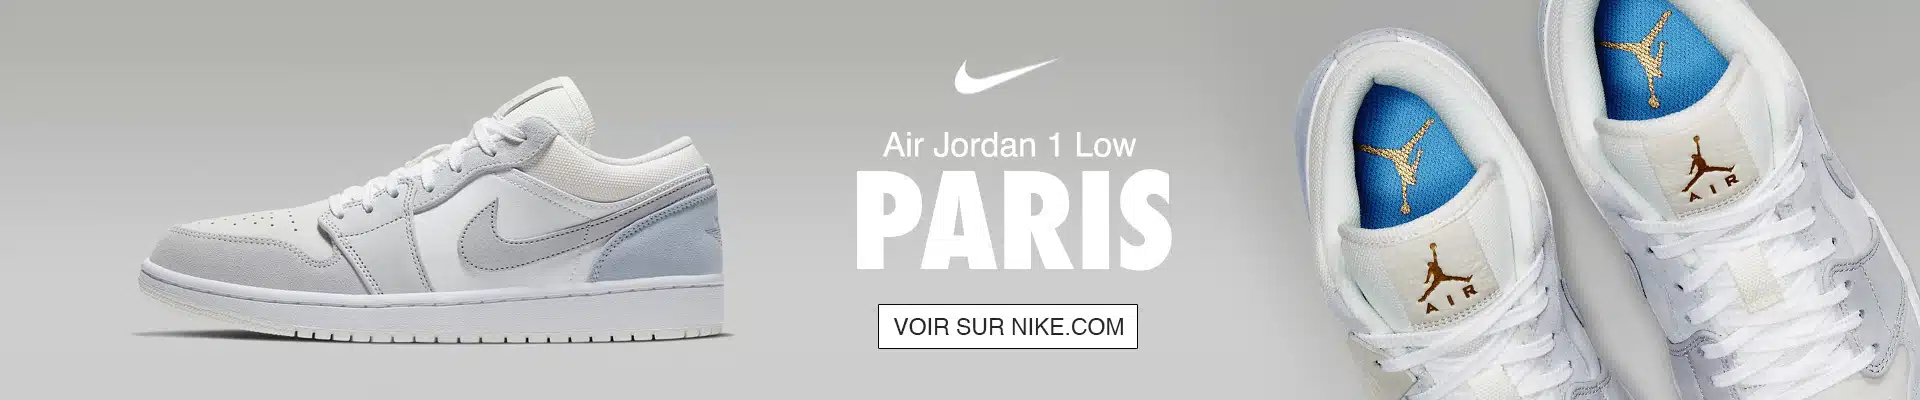 nike wmns air jordan 1 mid low Low Paris